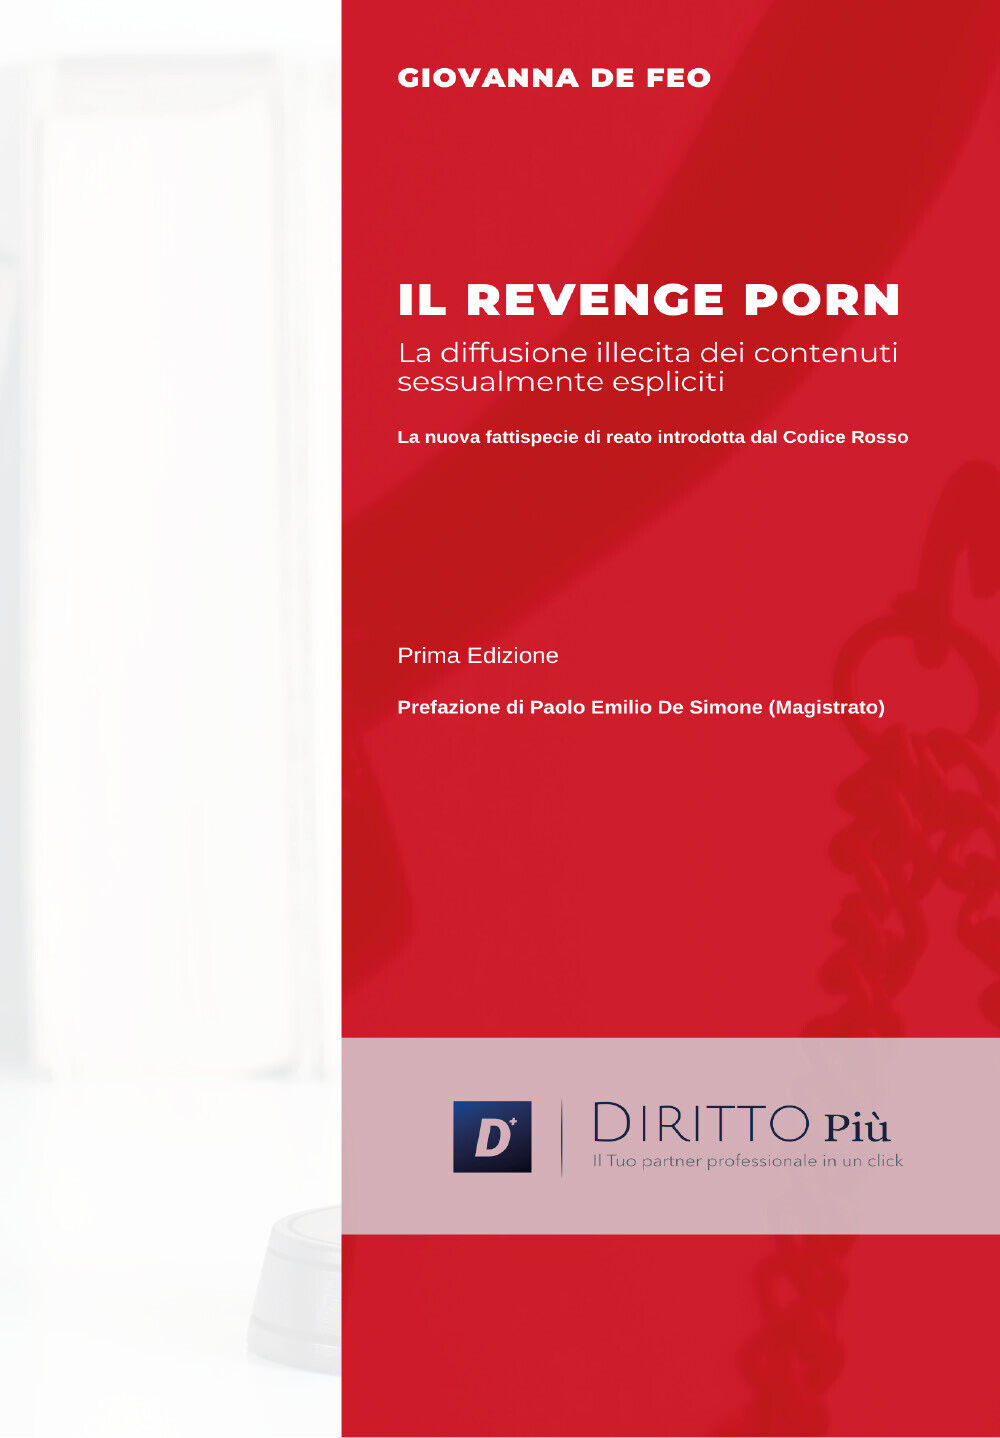 Il revenge porn: La diffusione illecita di contenuti sessualmente espliciti di G